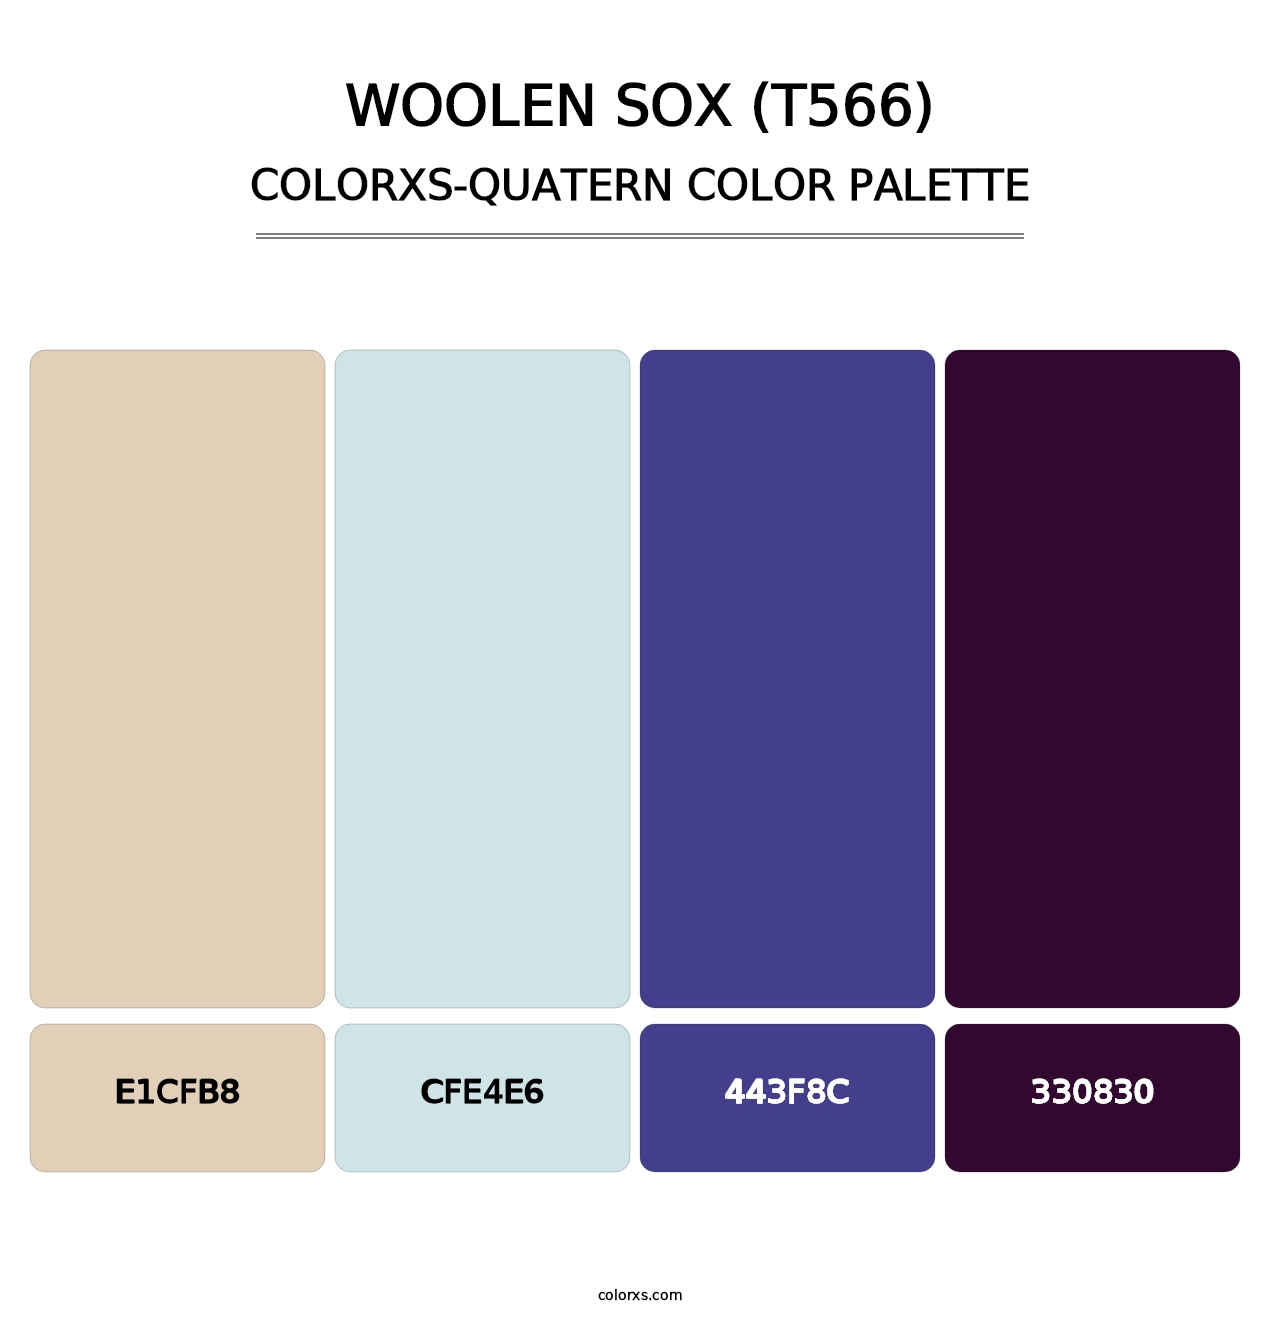 Woolen Sox (T566) - Colorxs Quatern Palette